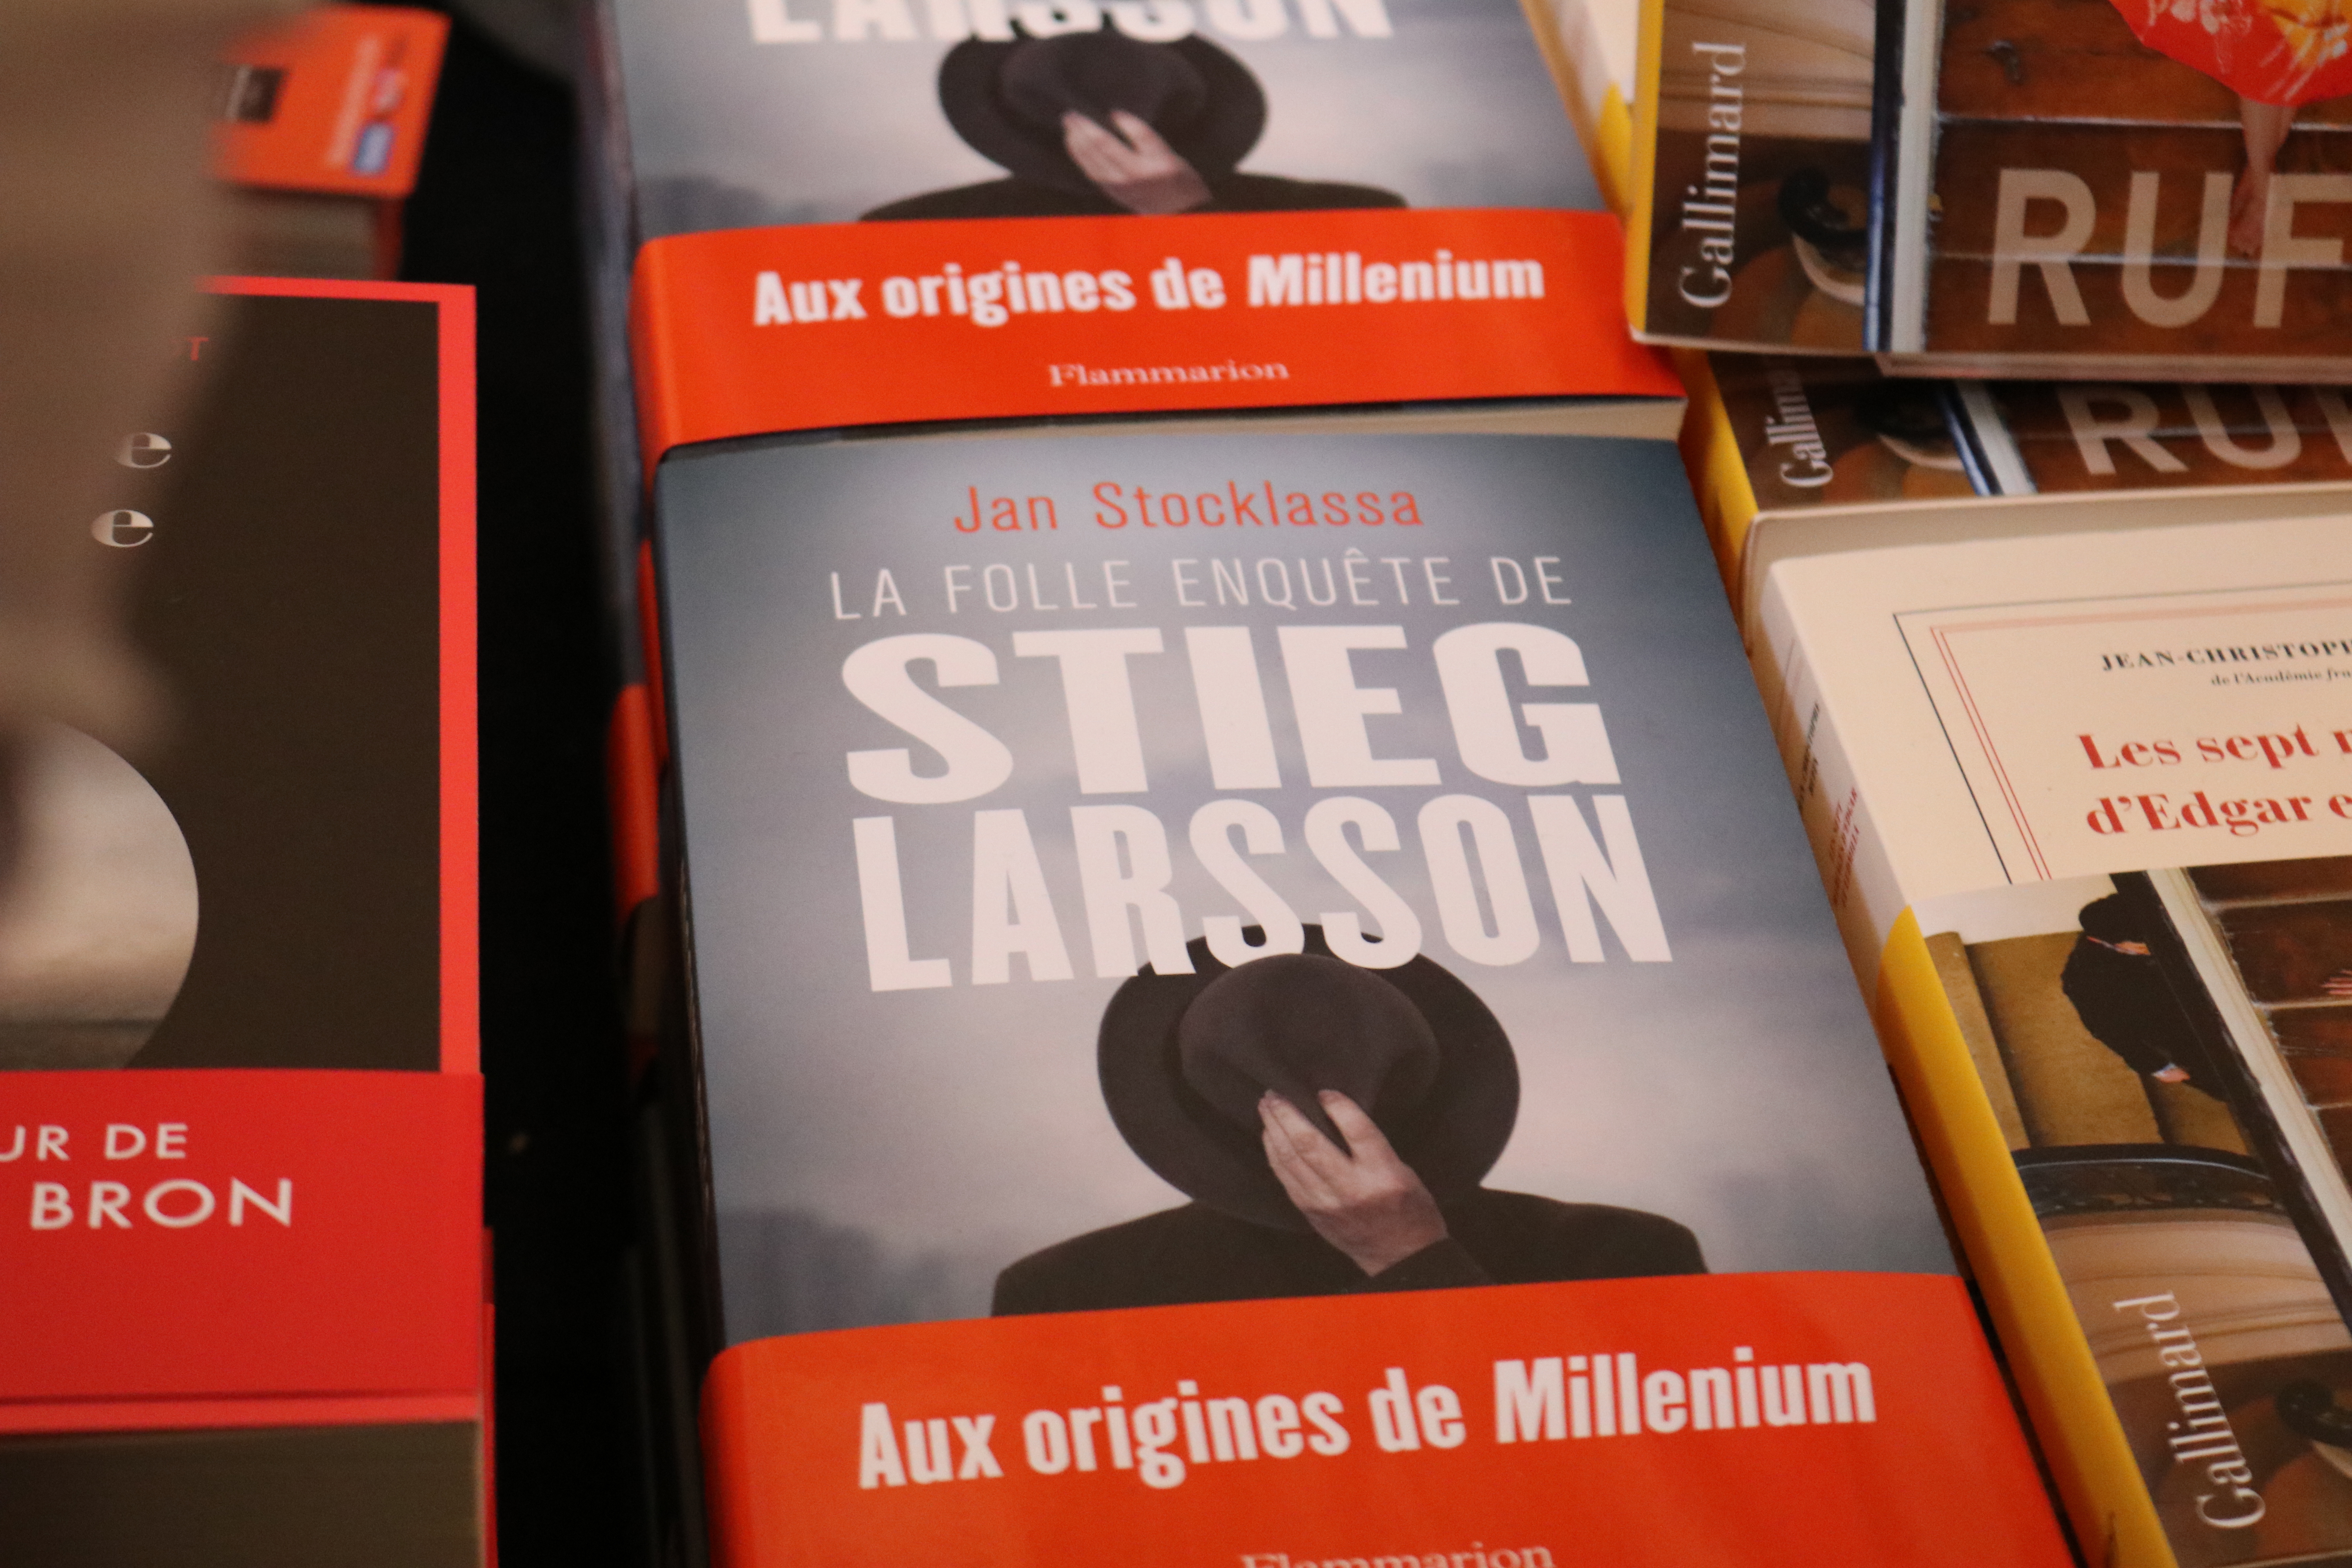 La folle histoire de Stieg Larsson Jan Stocklassa 2018